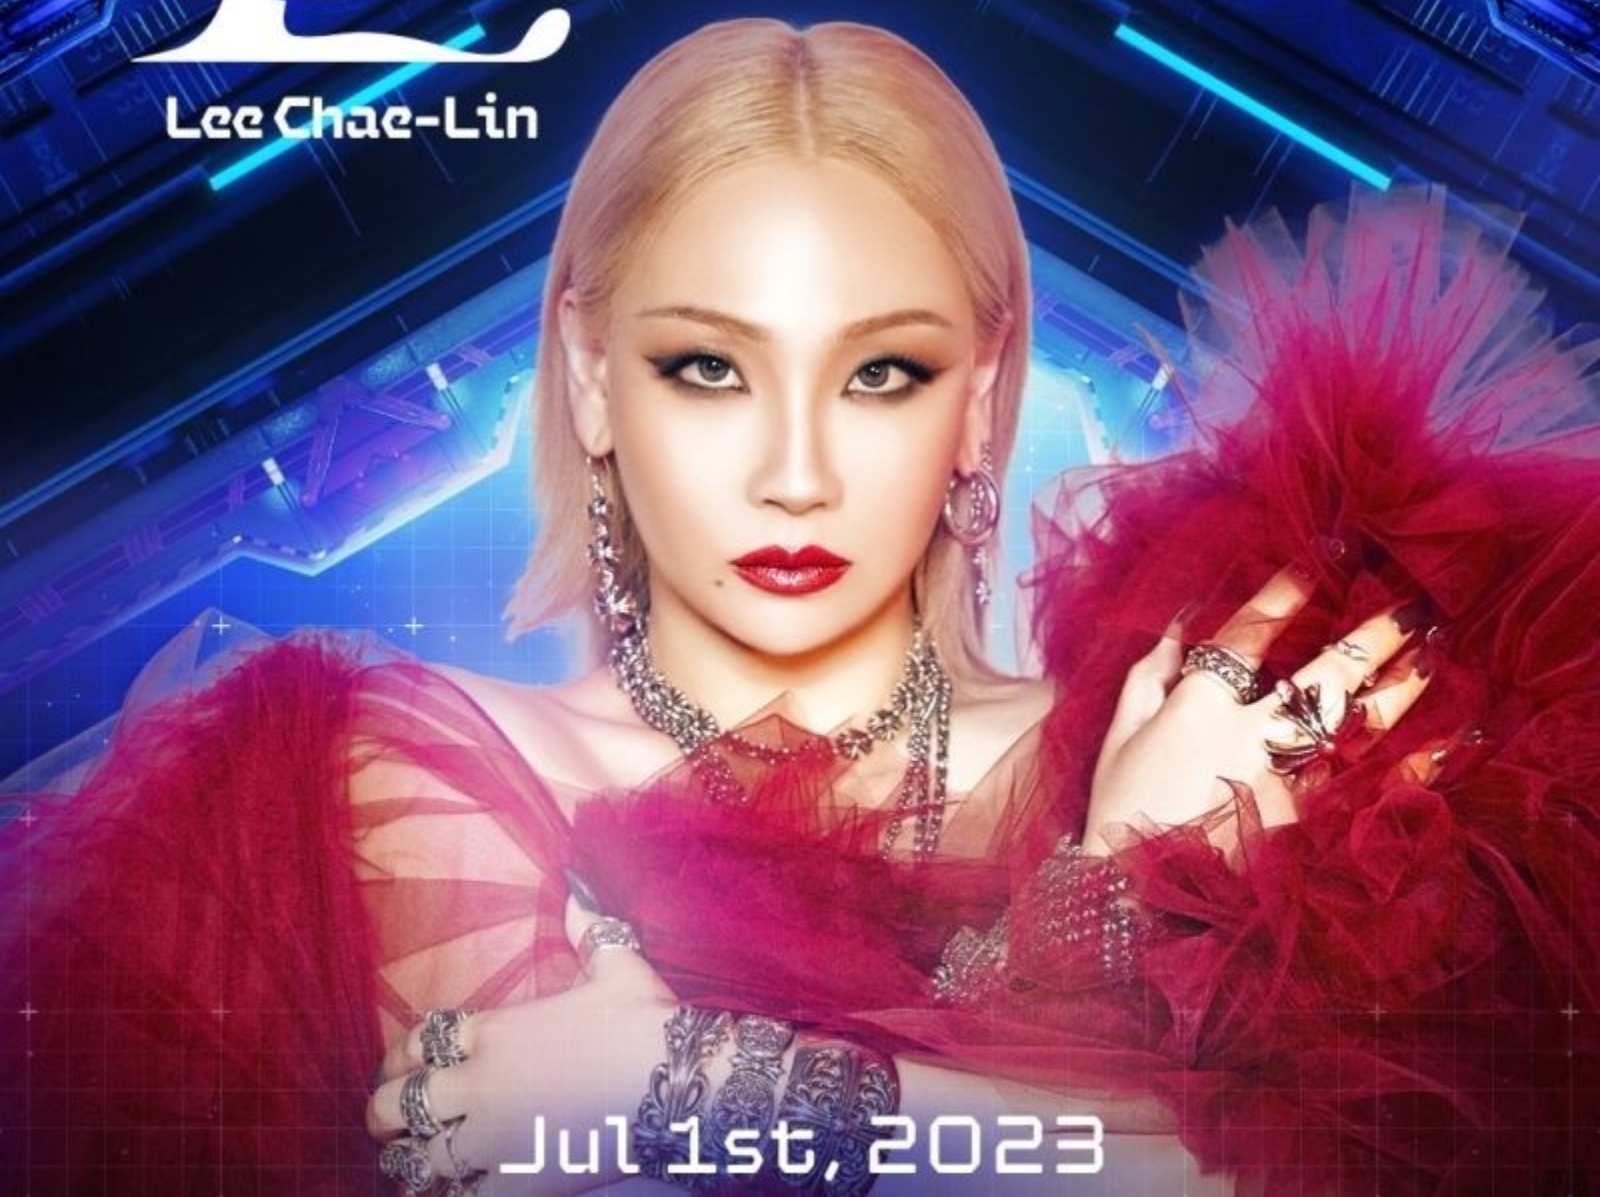 2NE1 隊長 CL 將在 7 月登台參加《太空港：遊戲開始》音樂節，預計帶來 50 分鐘超炸演出！